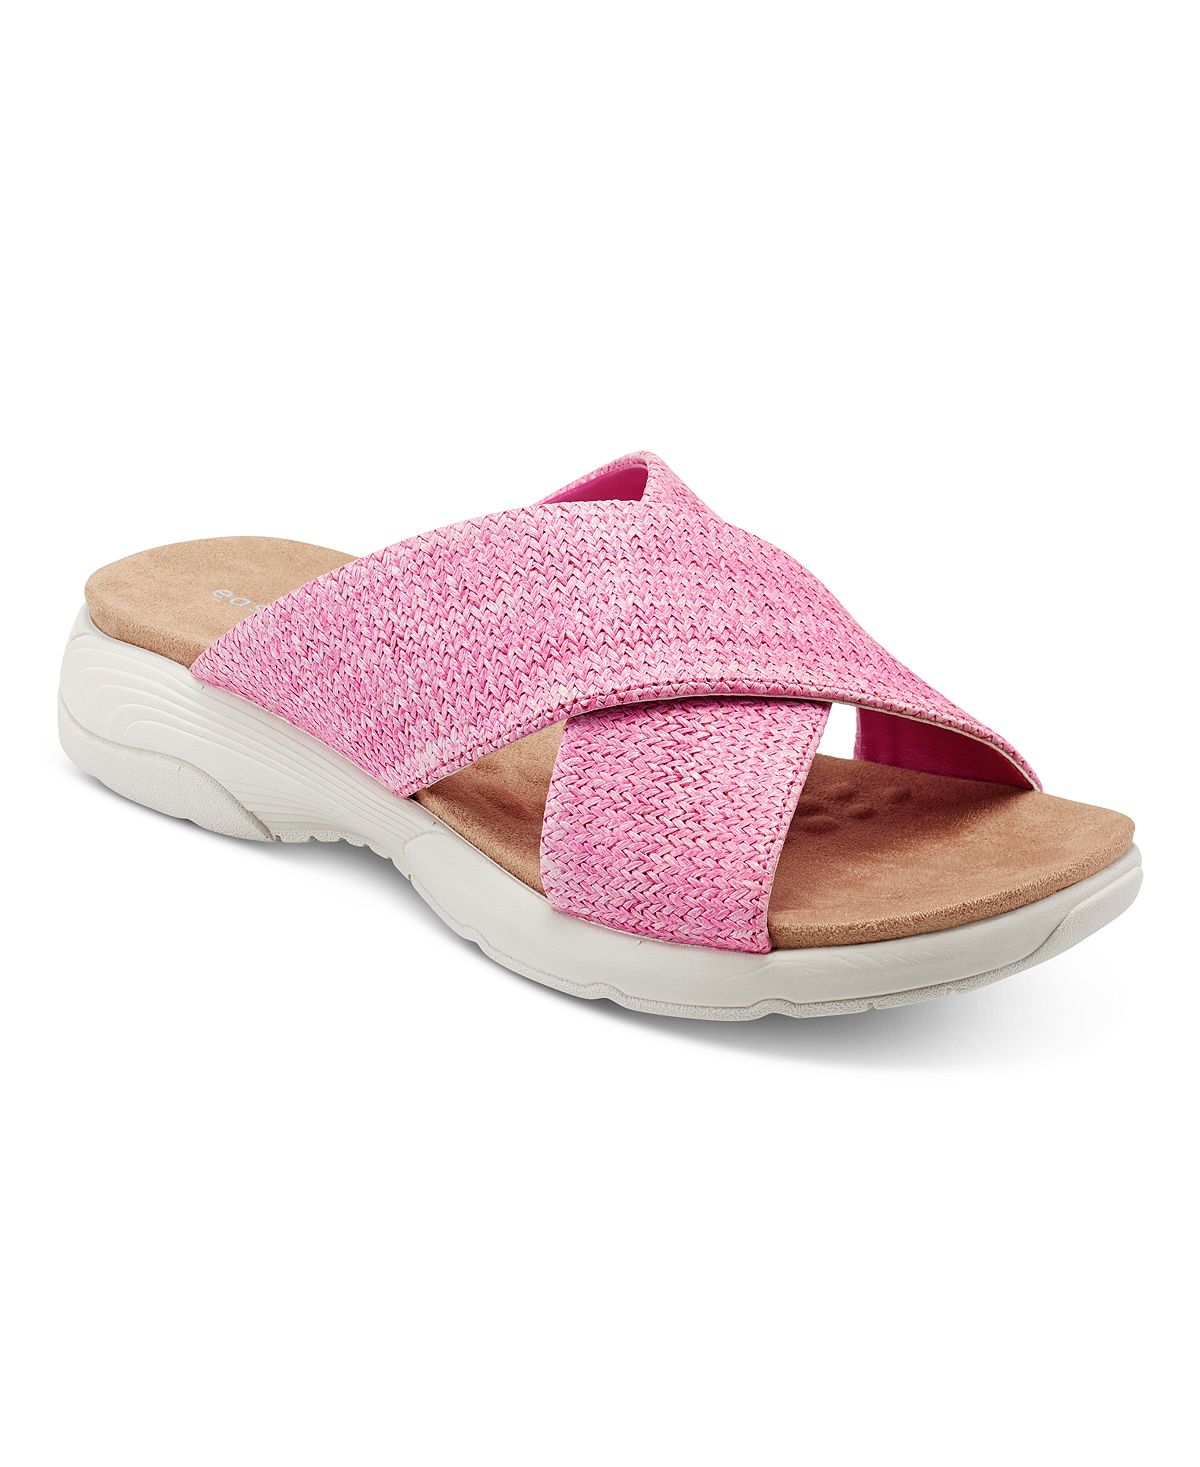 Женские повседневные сандалии на плоской подошве с квадратным носком Taite Easy Spirit, розовый